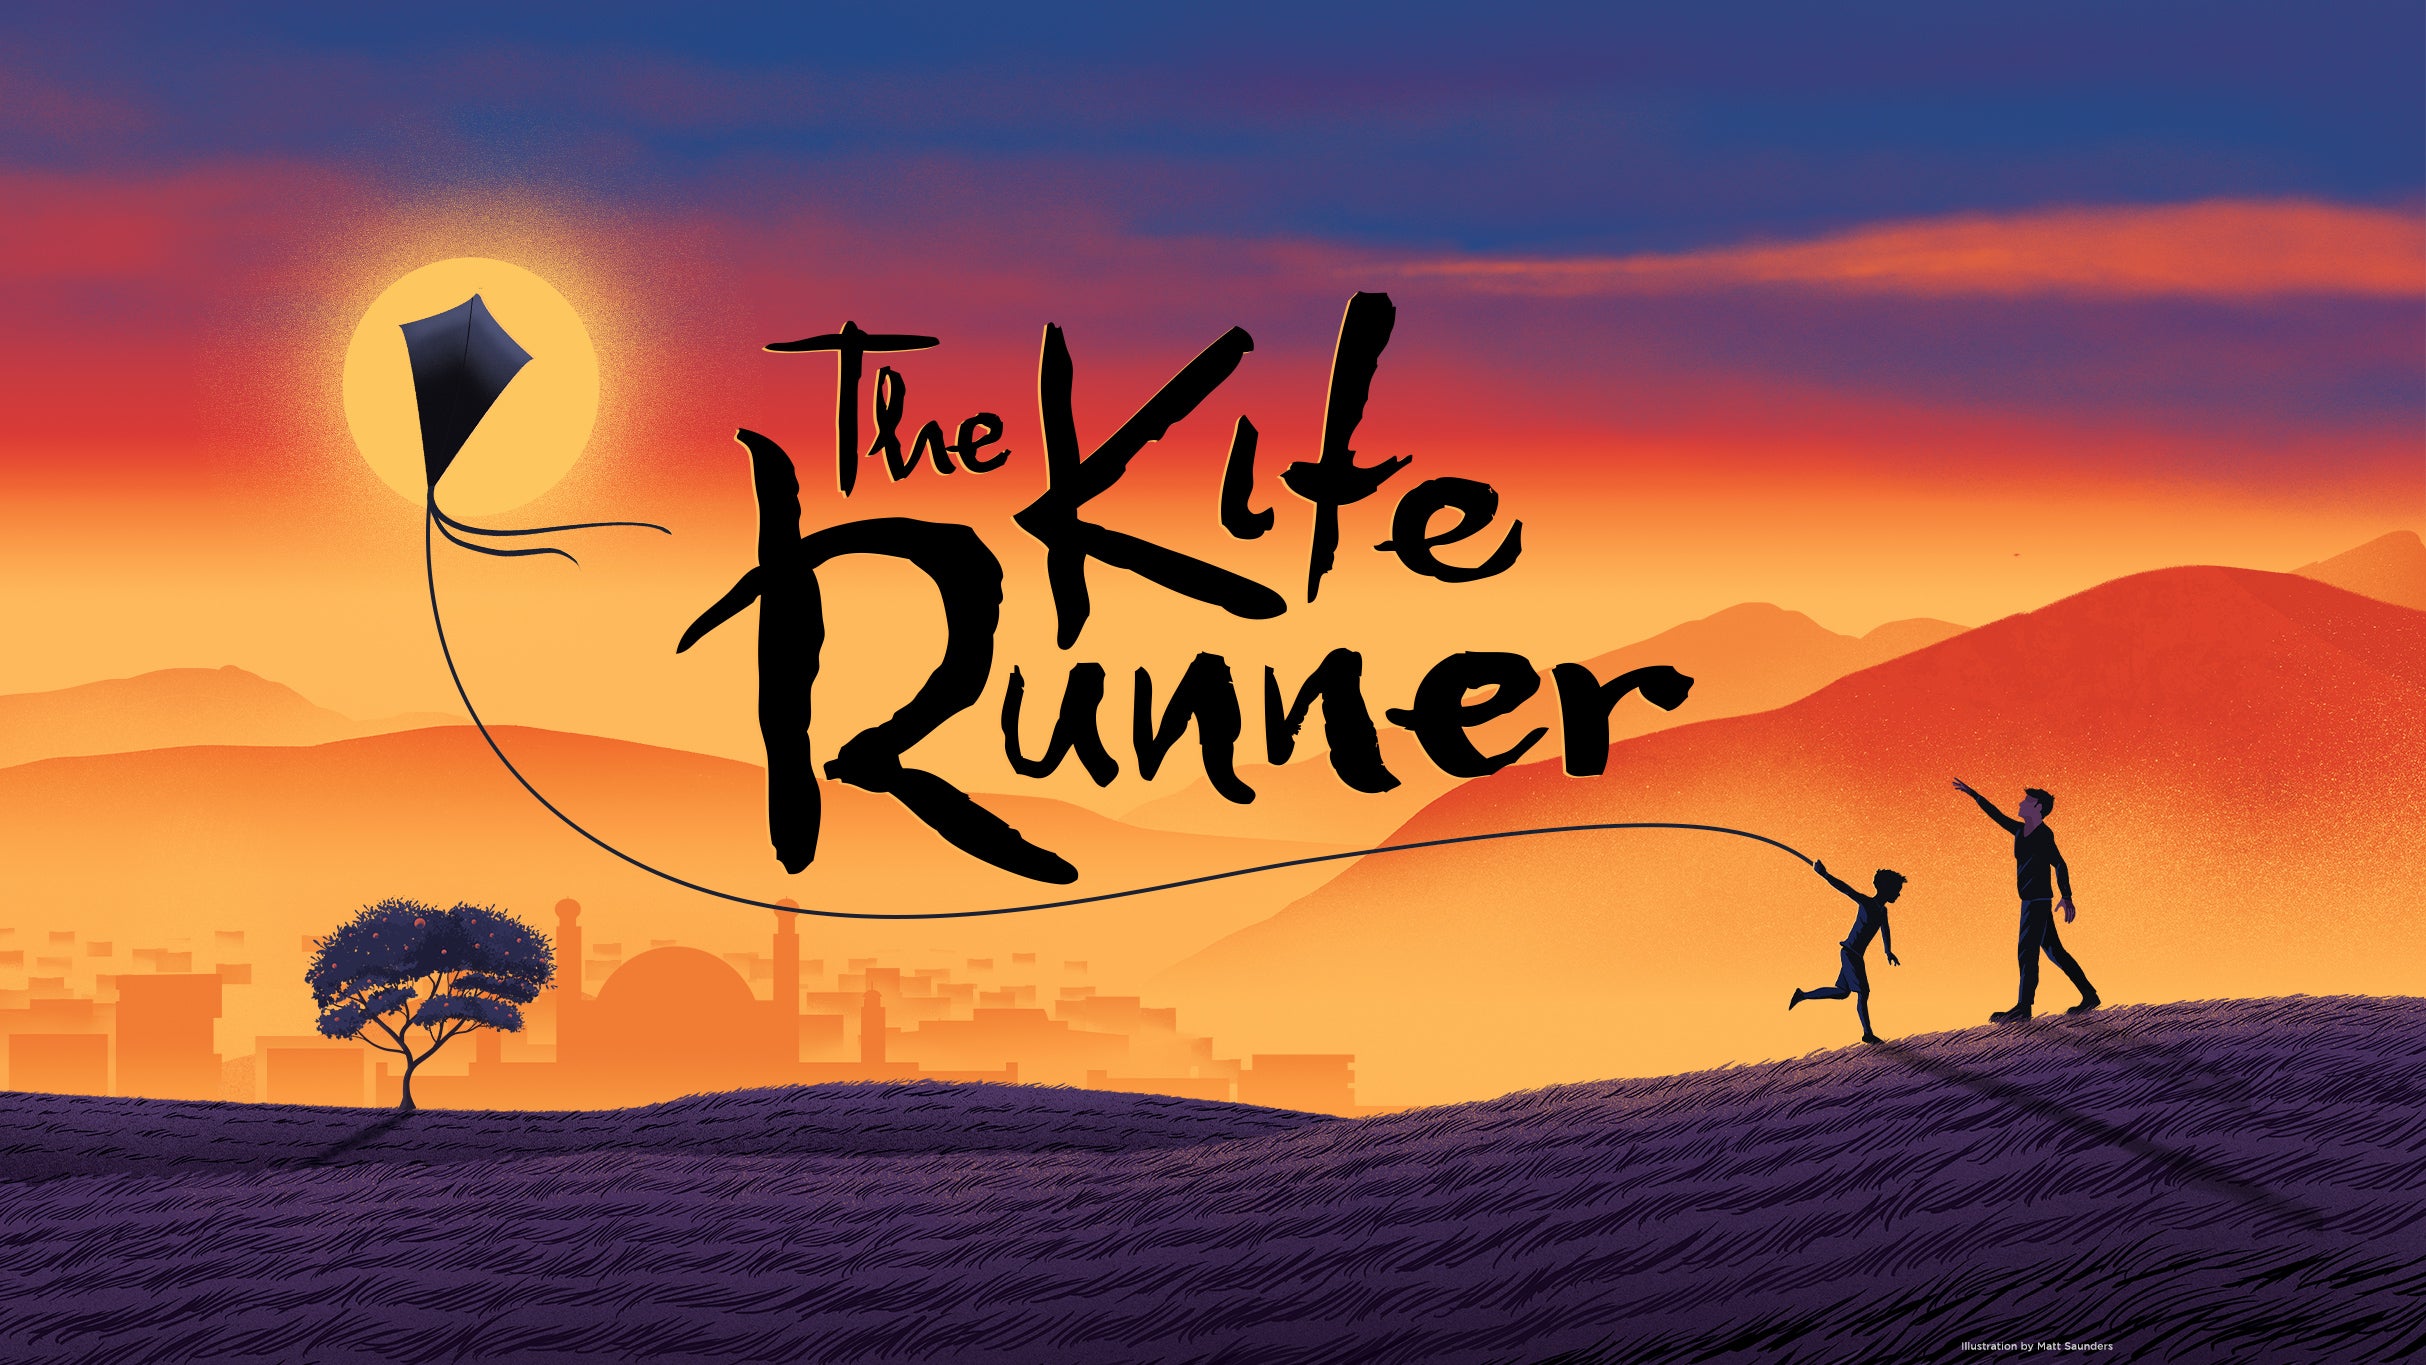 The Kite Runner (Chicago) in Chicago promo photo for Internet Presales presale offer code